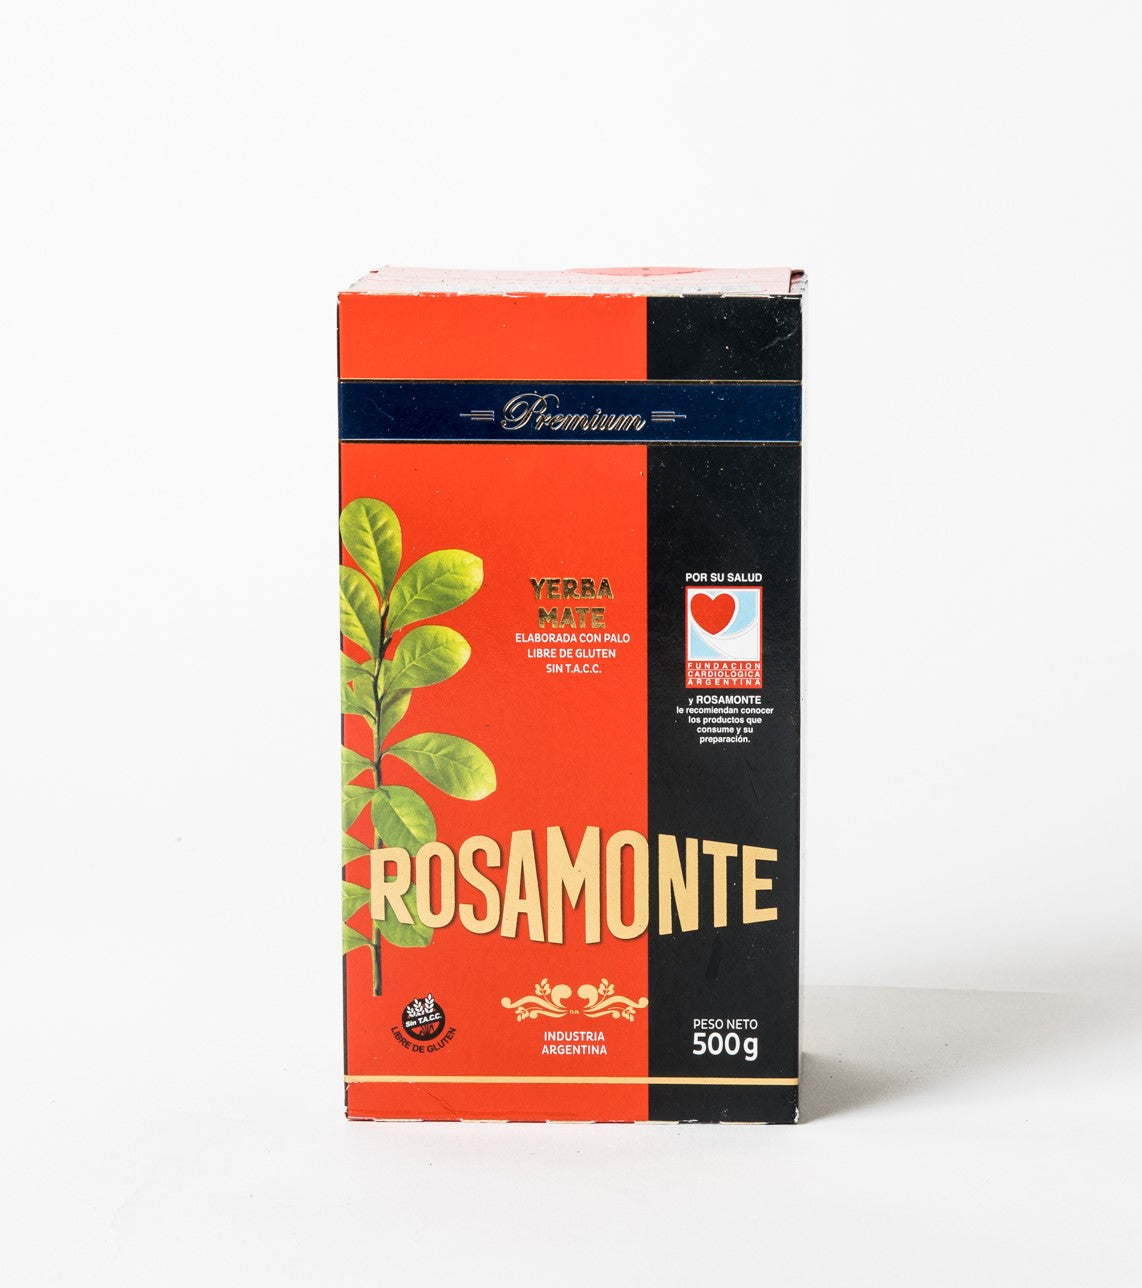 Rosamonte Yerba Mate Premium 500g